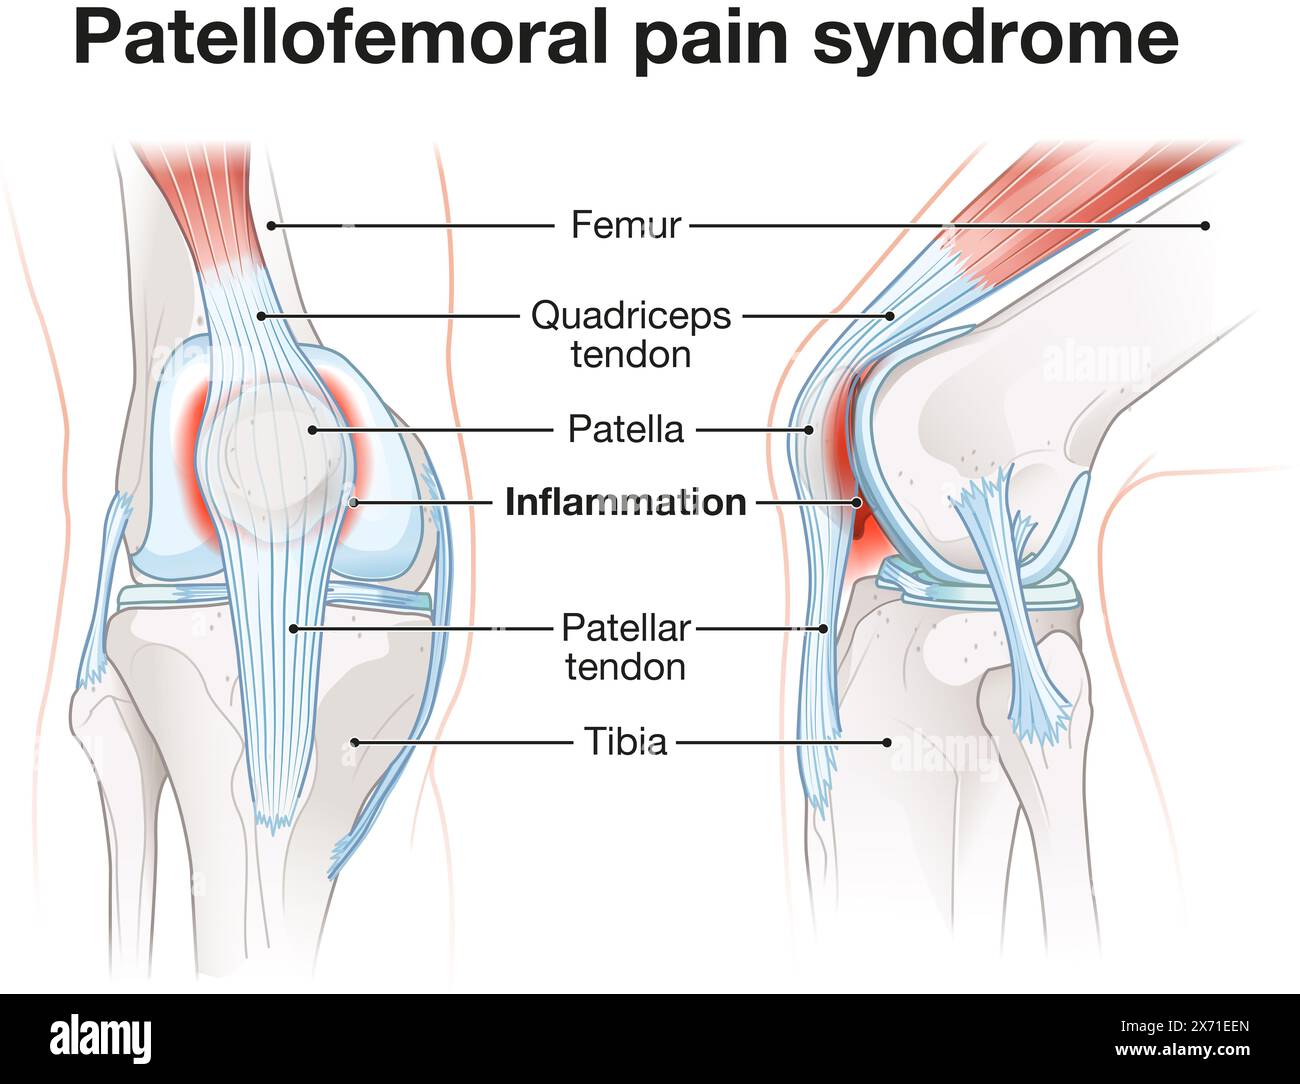 La sindrome da dolore patellofemorale comporta disagio al ginocchio dovuto a malallineamento, infiammazione e disfunzione dell'articolazione patellofemorale durante il movimento. Foto Stock